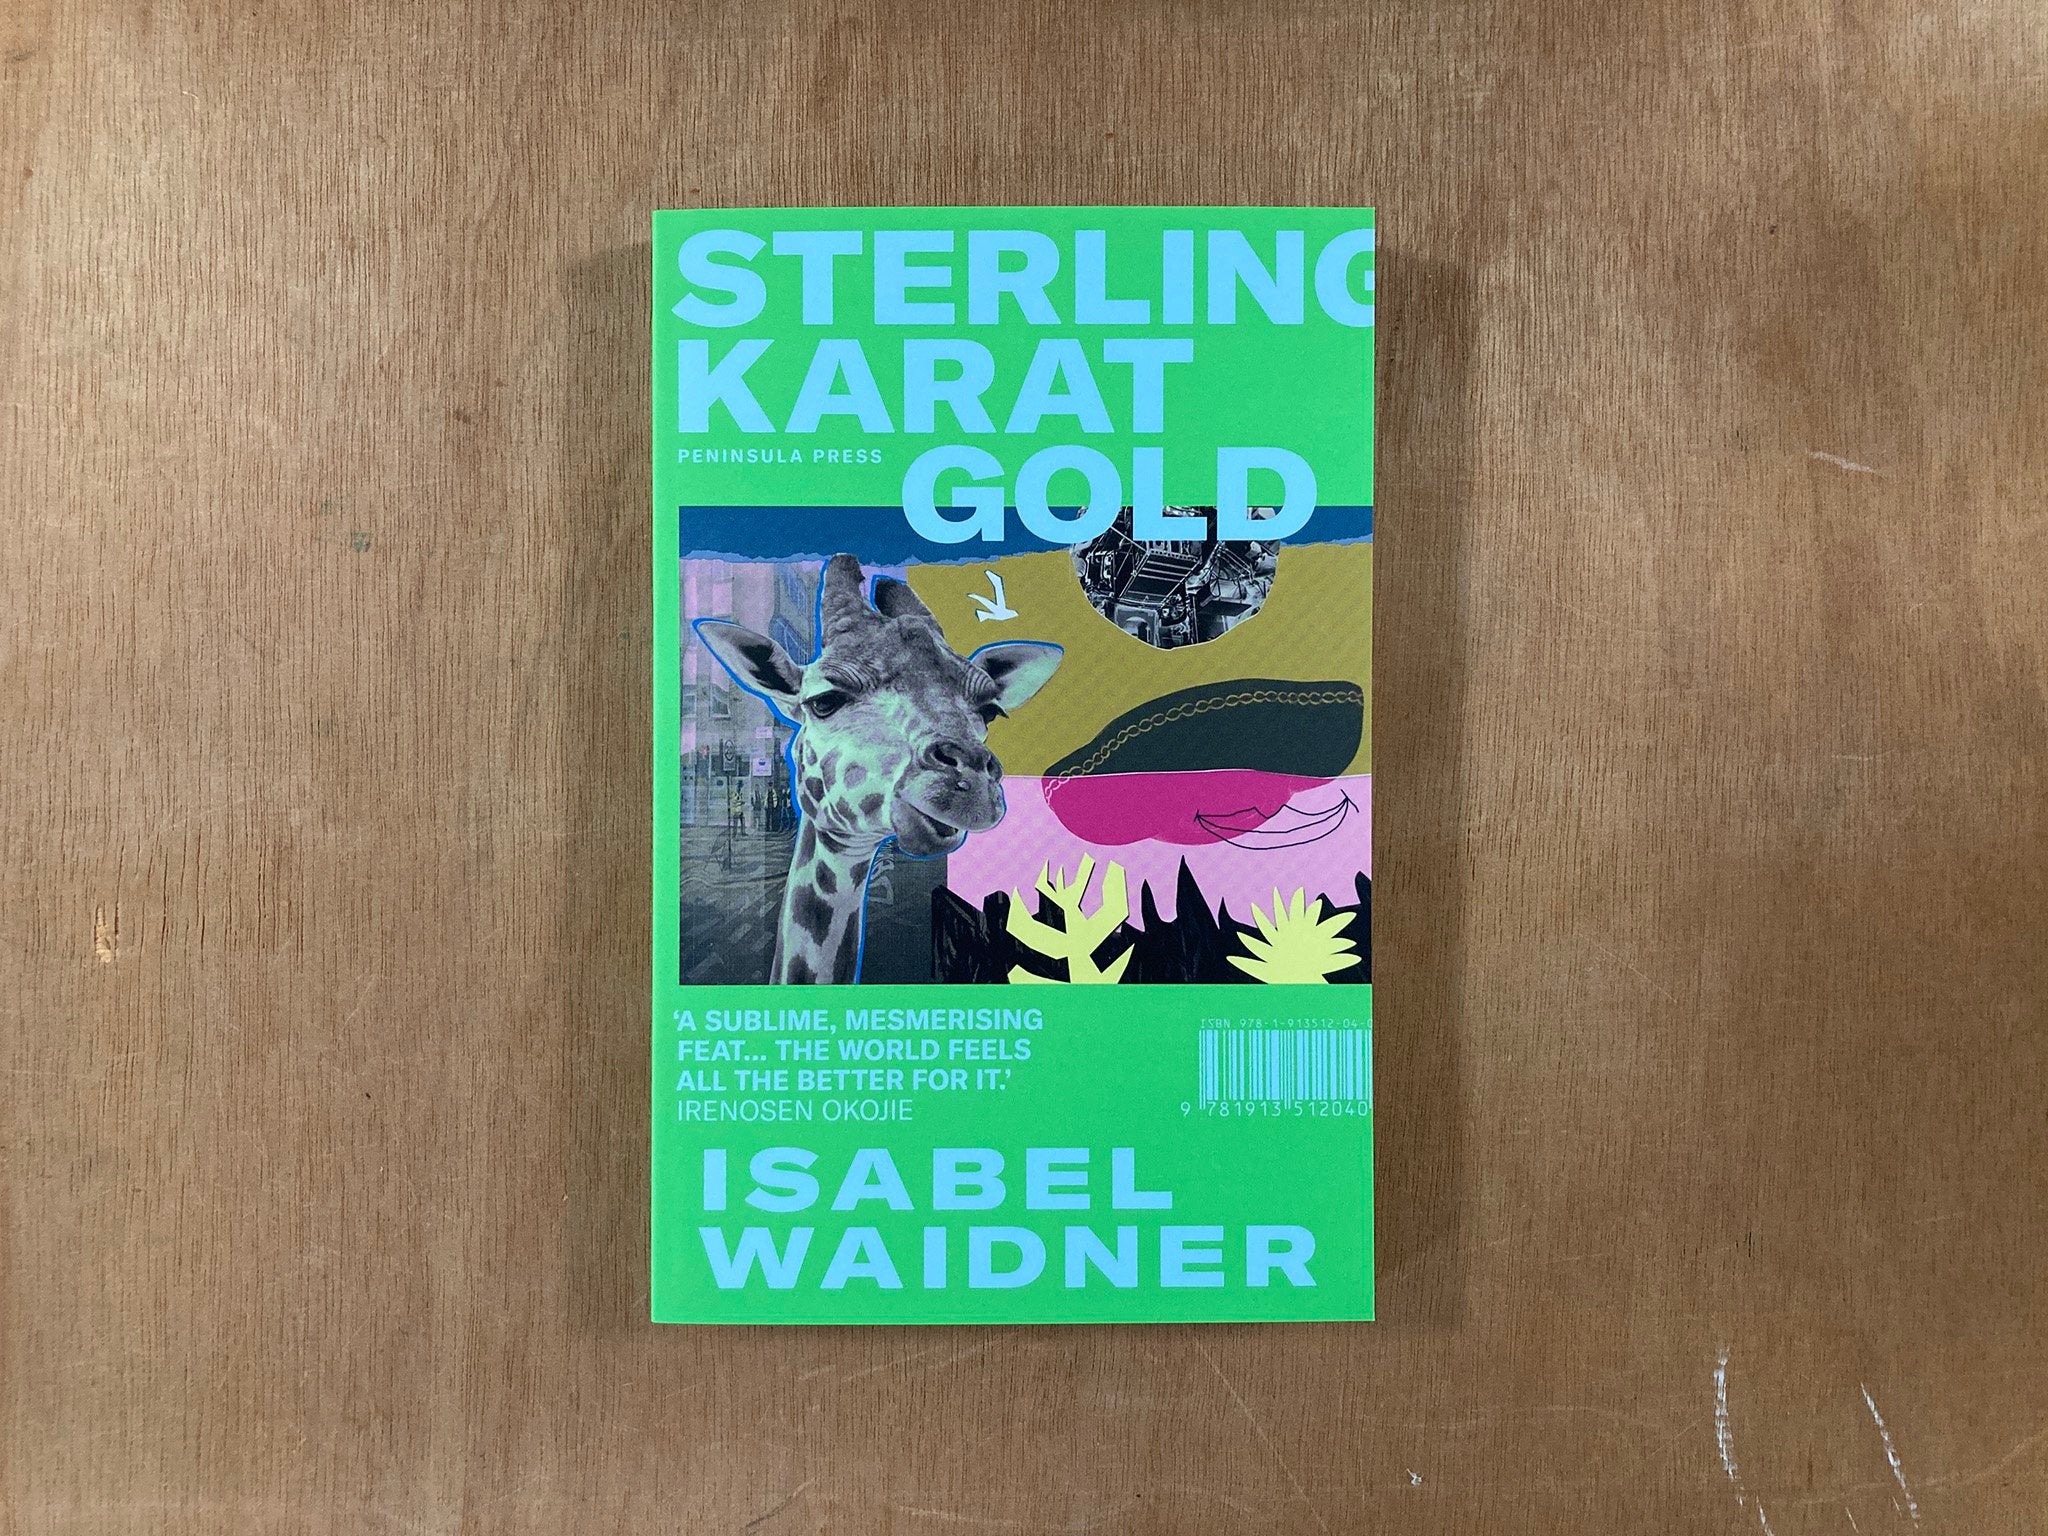 STERLING KARAT GOLD by Isabel Waidner